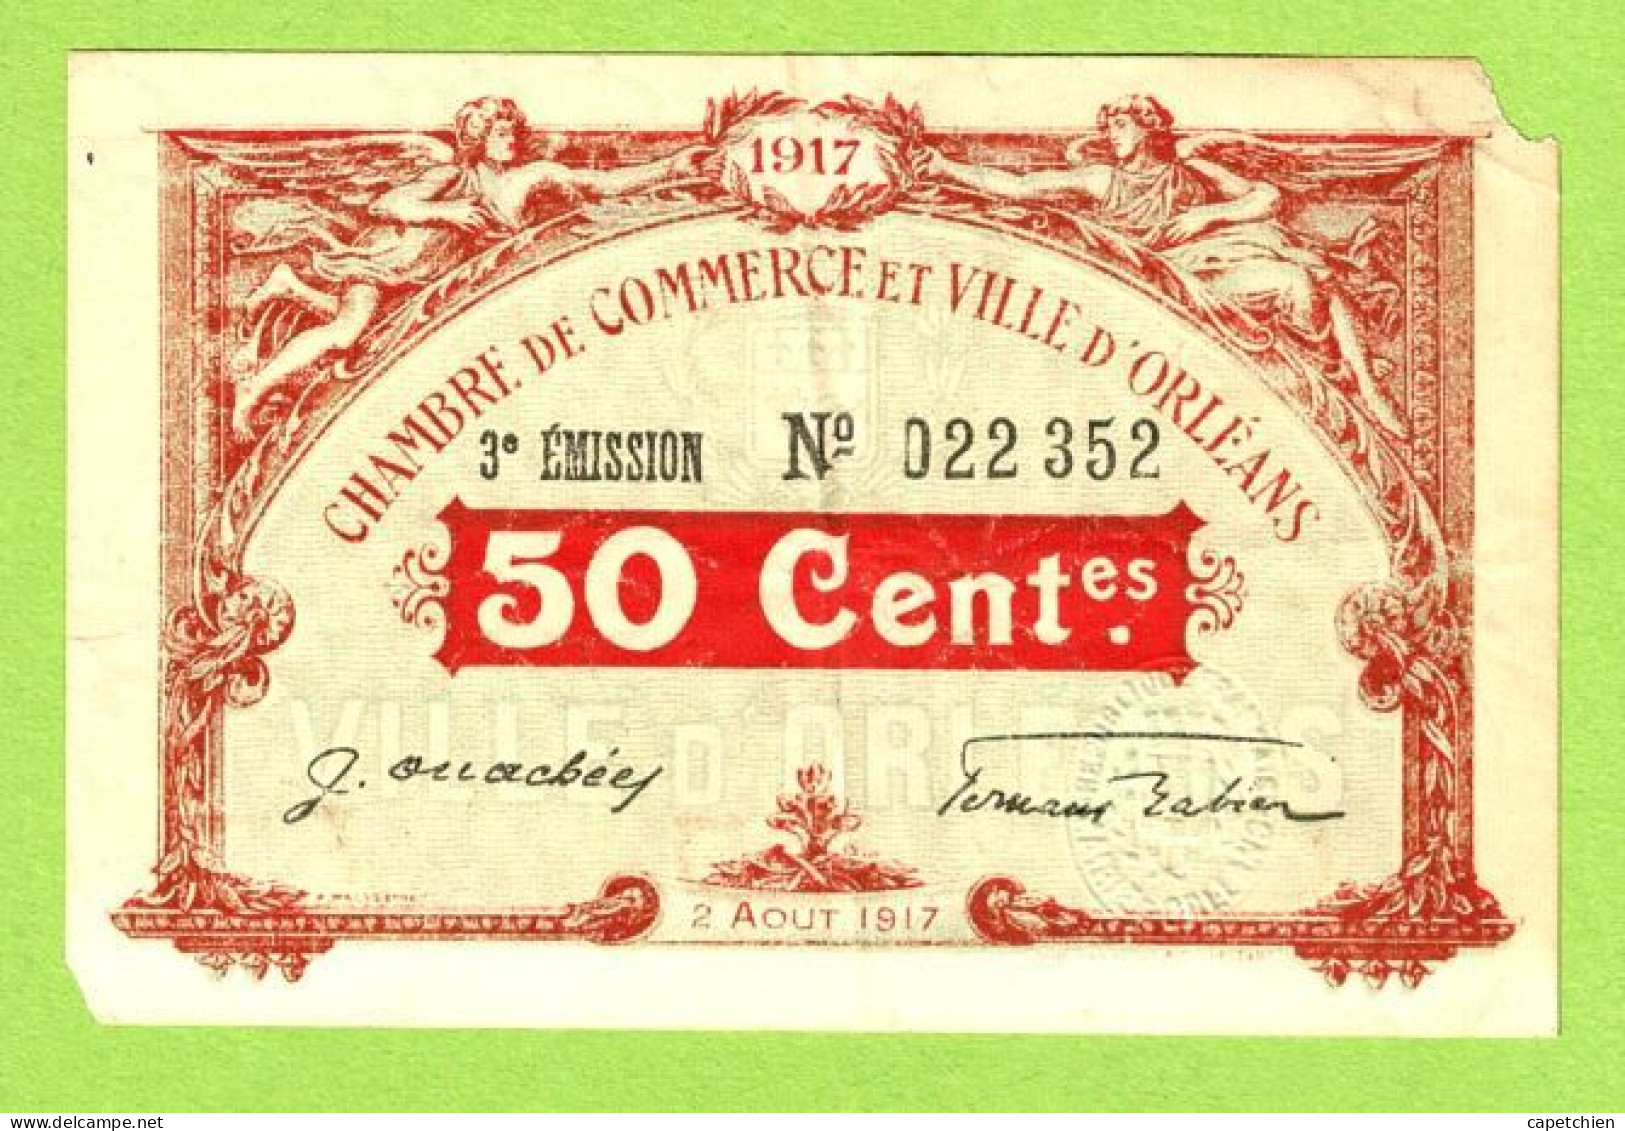 FRANCE / CHAMBRE DE COMMERCE / 50 CENTIMES /  2 AOUT 1917  / 3ème EMISSION / 022352 - Chambre De Commerce